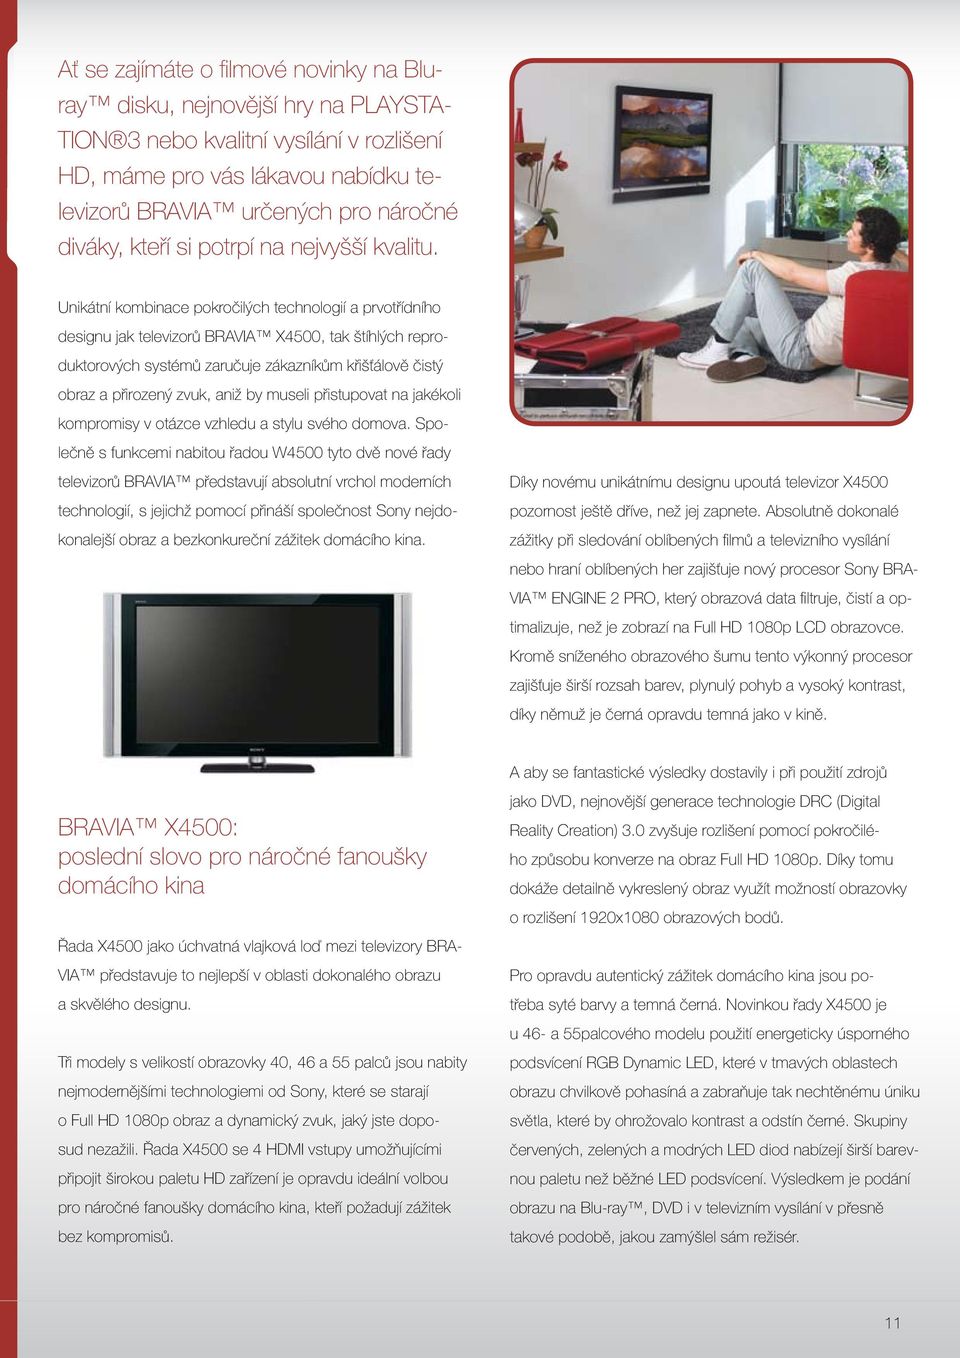 Unikátní kombinace pokročilých technologií a prvotřídního designu jak televizorů BRAVIA X4500, tak štíhlých reproduktorových systémů zaručuje zákazníkům křišťálově čistý obraz a přirozený zvuk, aniž